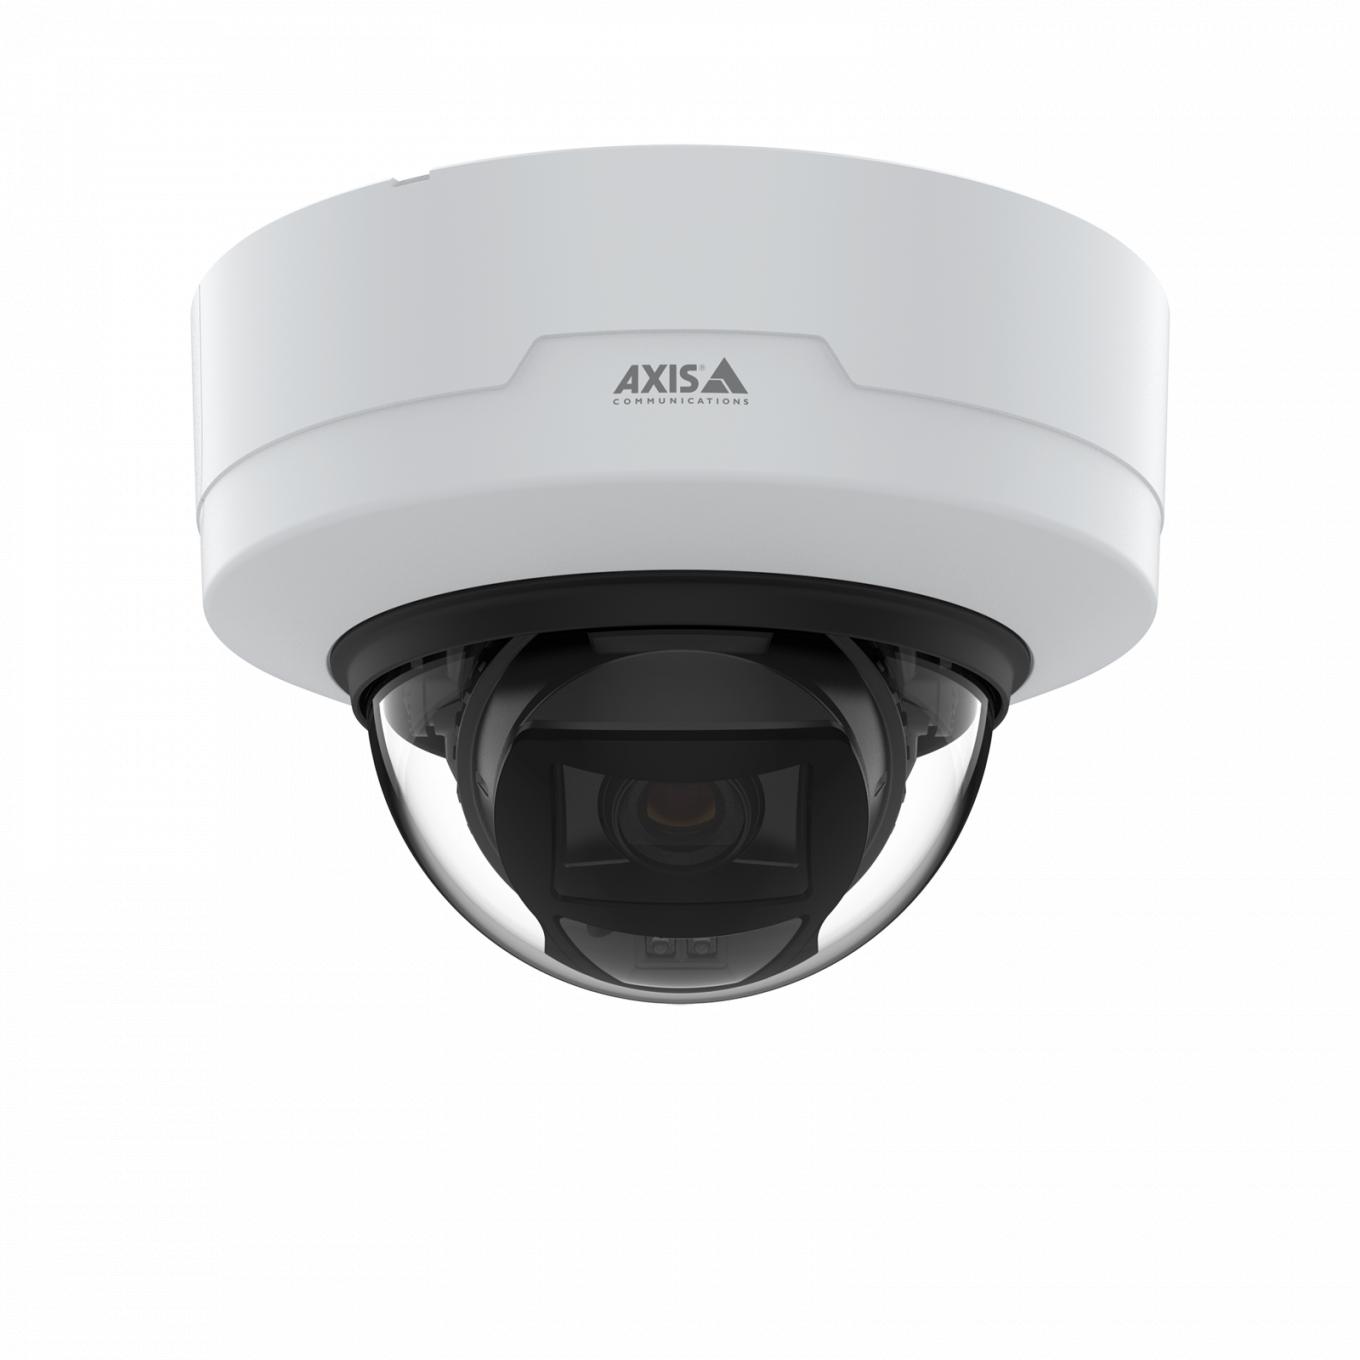 AXIS P3265-LV Dome Camera montada no teto vista pela frente